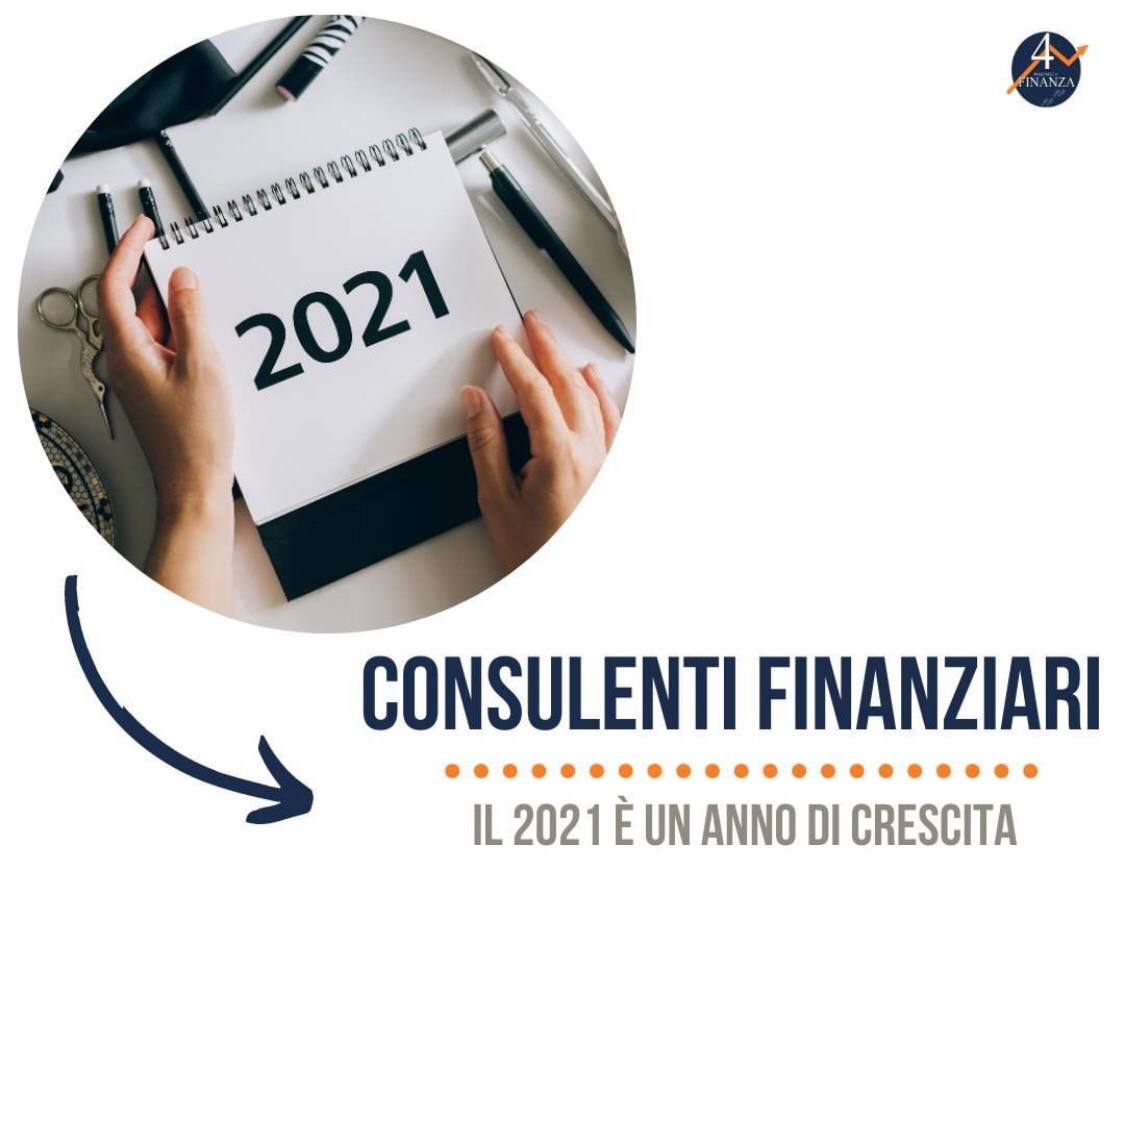 Consulenti finanziari: il 2021 è un anno di crescita